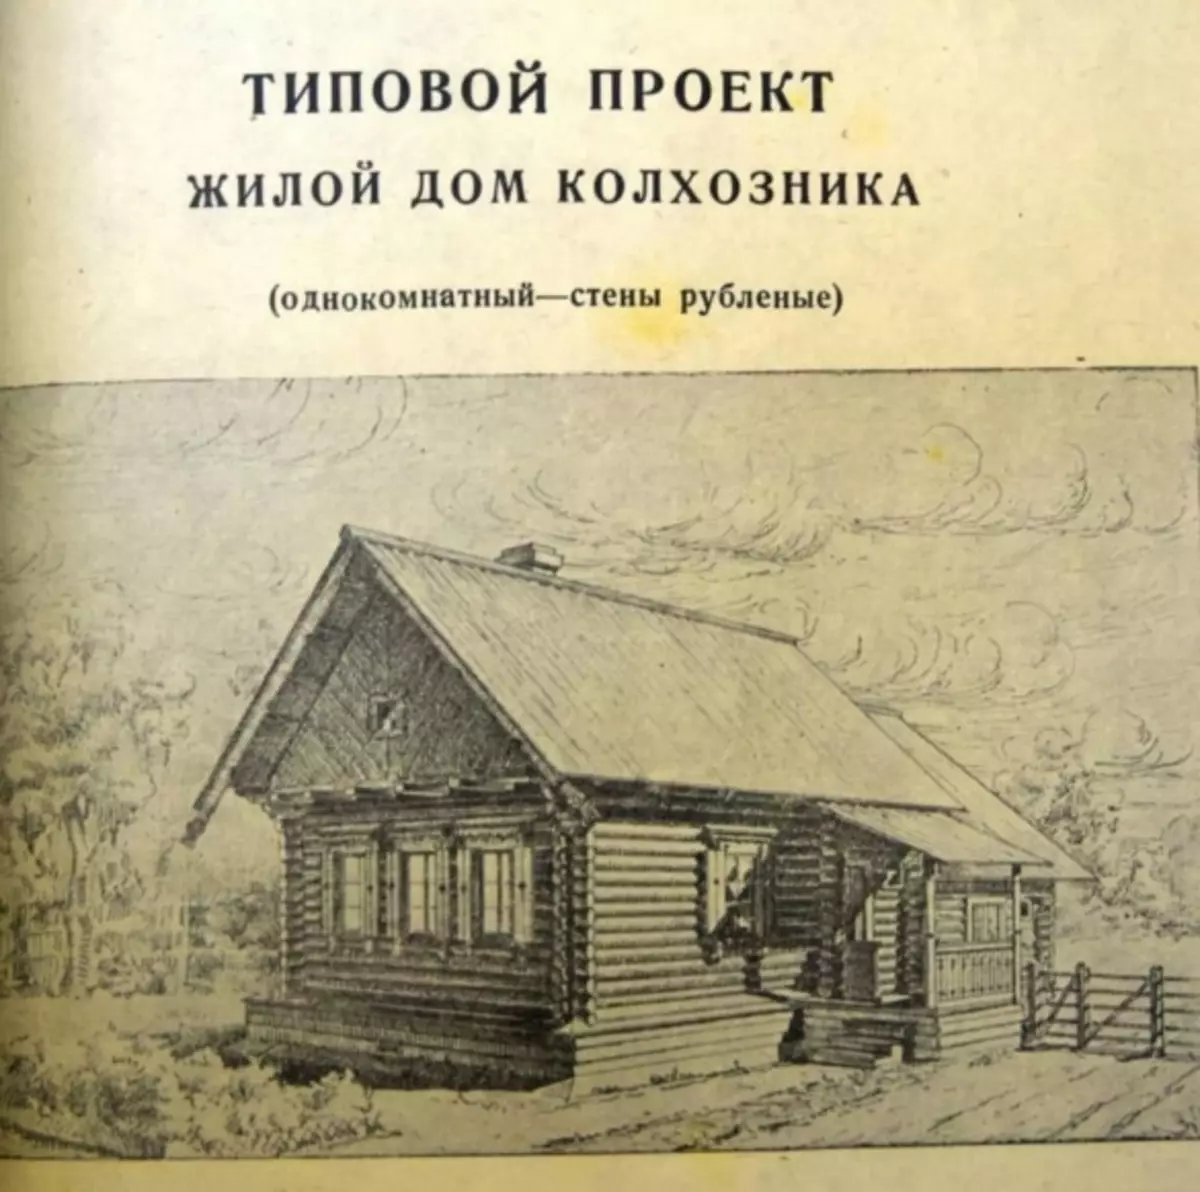 苏联集体农民住宅房屋的典型项目 20907_1